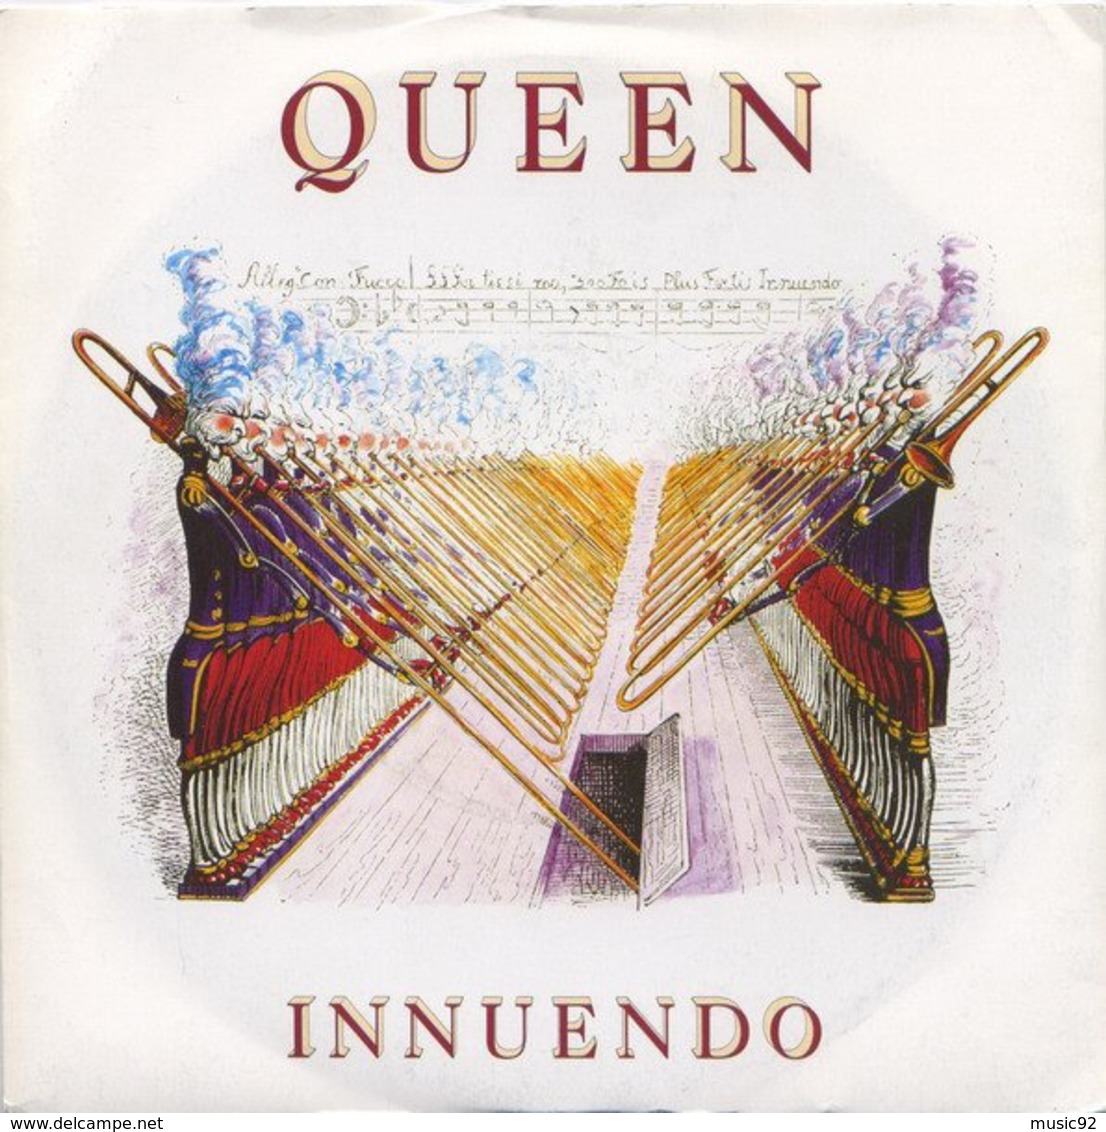 Queen - 45t Vinyle - Innuendo - Hard Rock & Metal